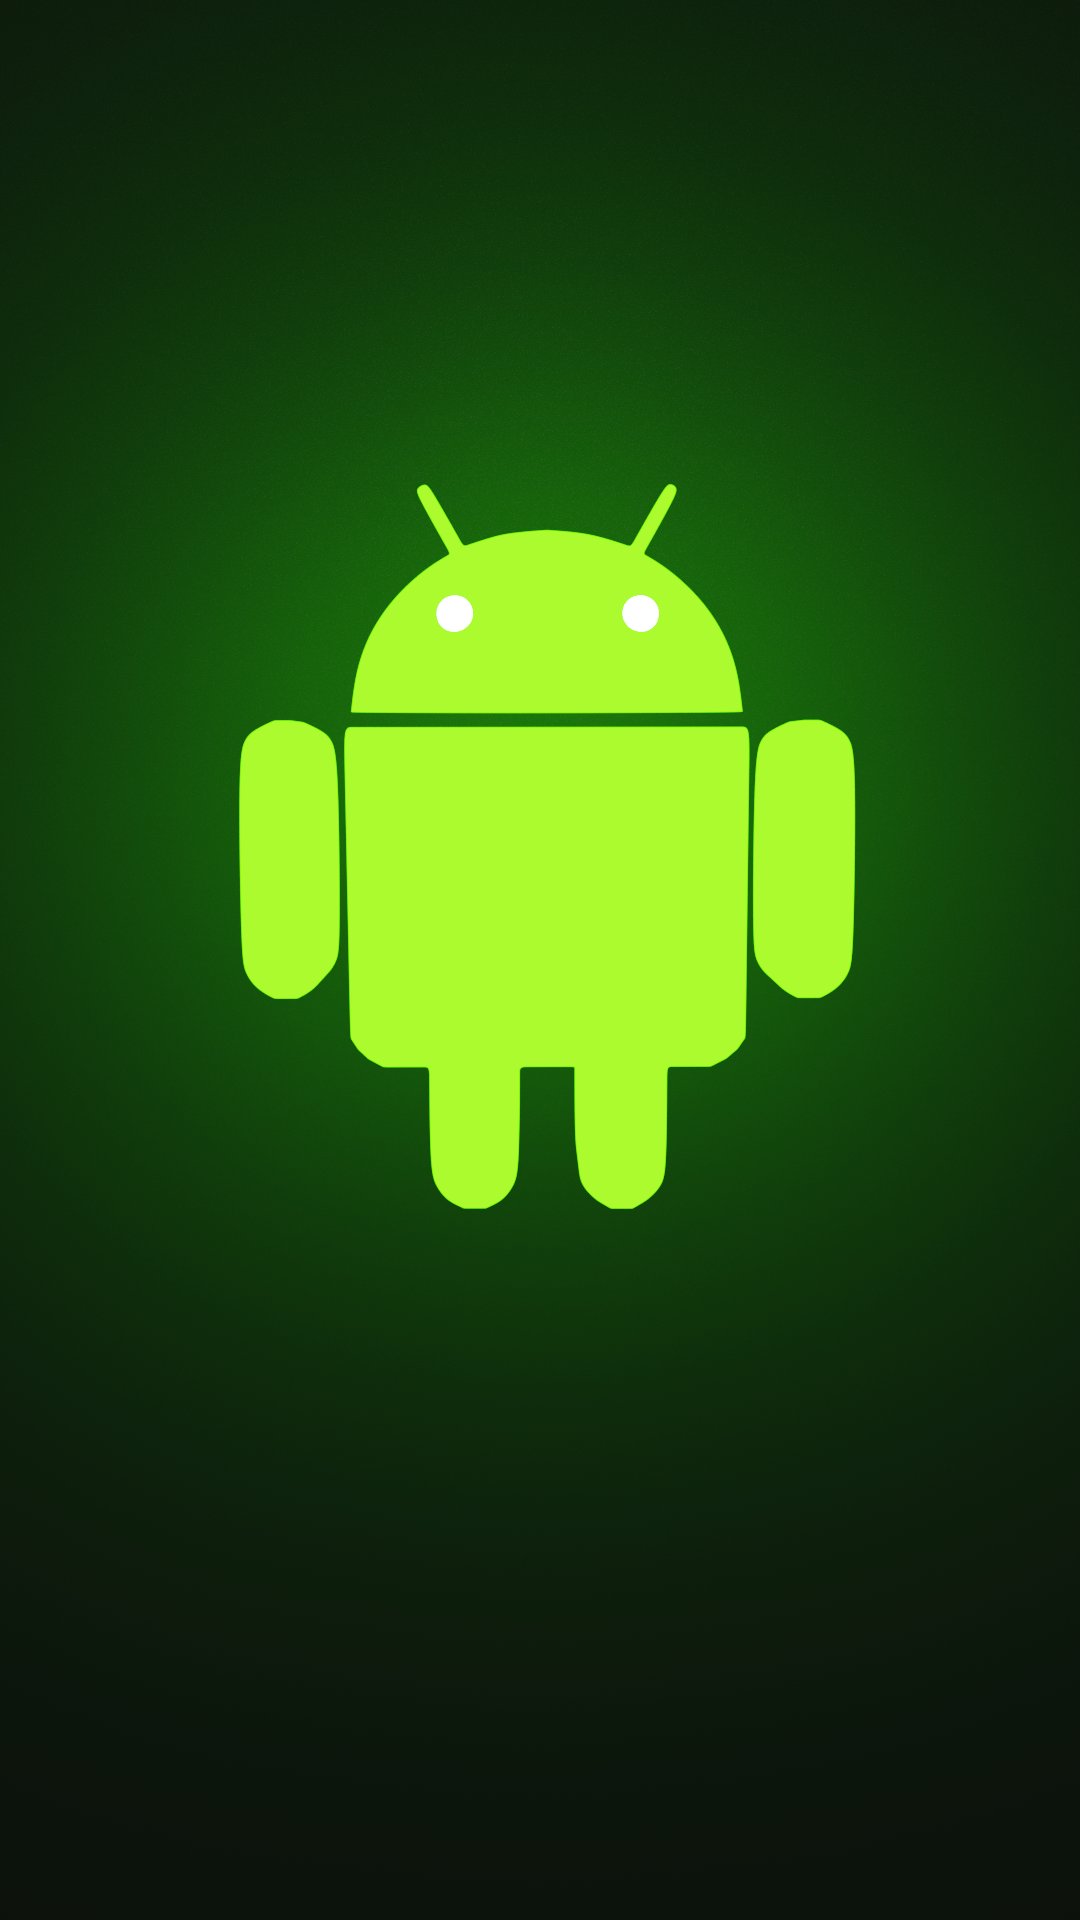 Android logo wallpaper rblender